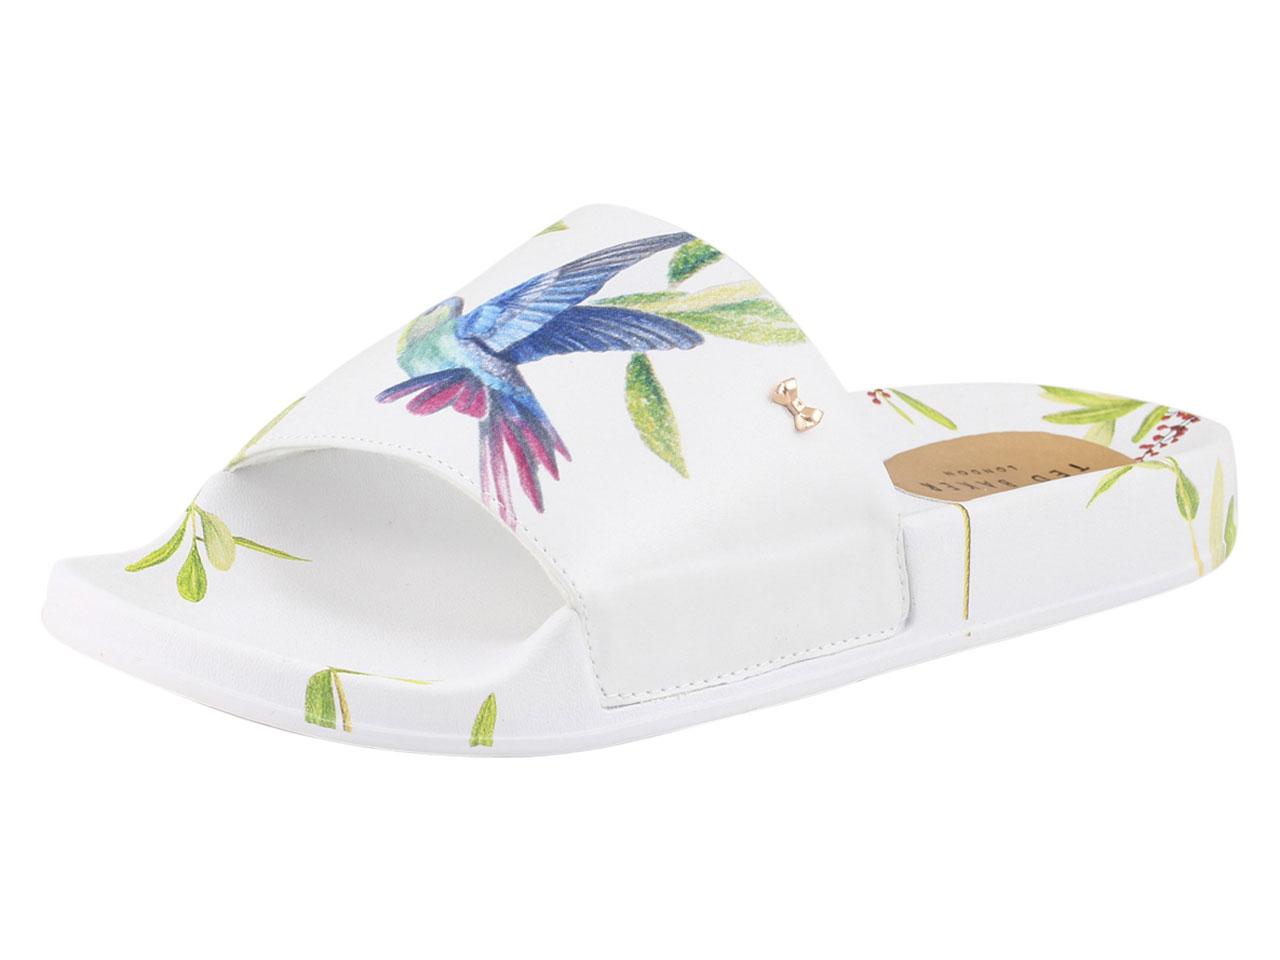 Ted Baker Women's Aveline Slides Sandals Shoes - White - 10 B(M) US